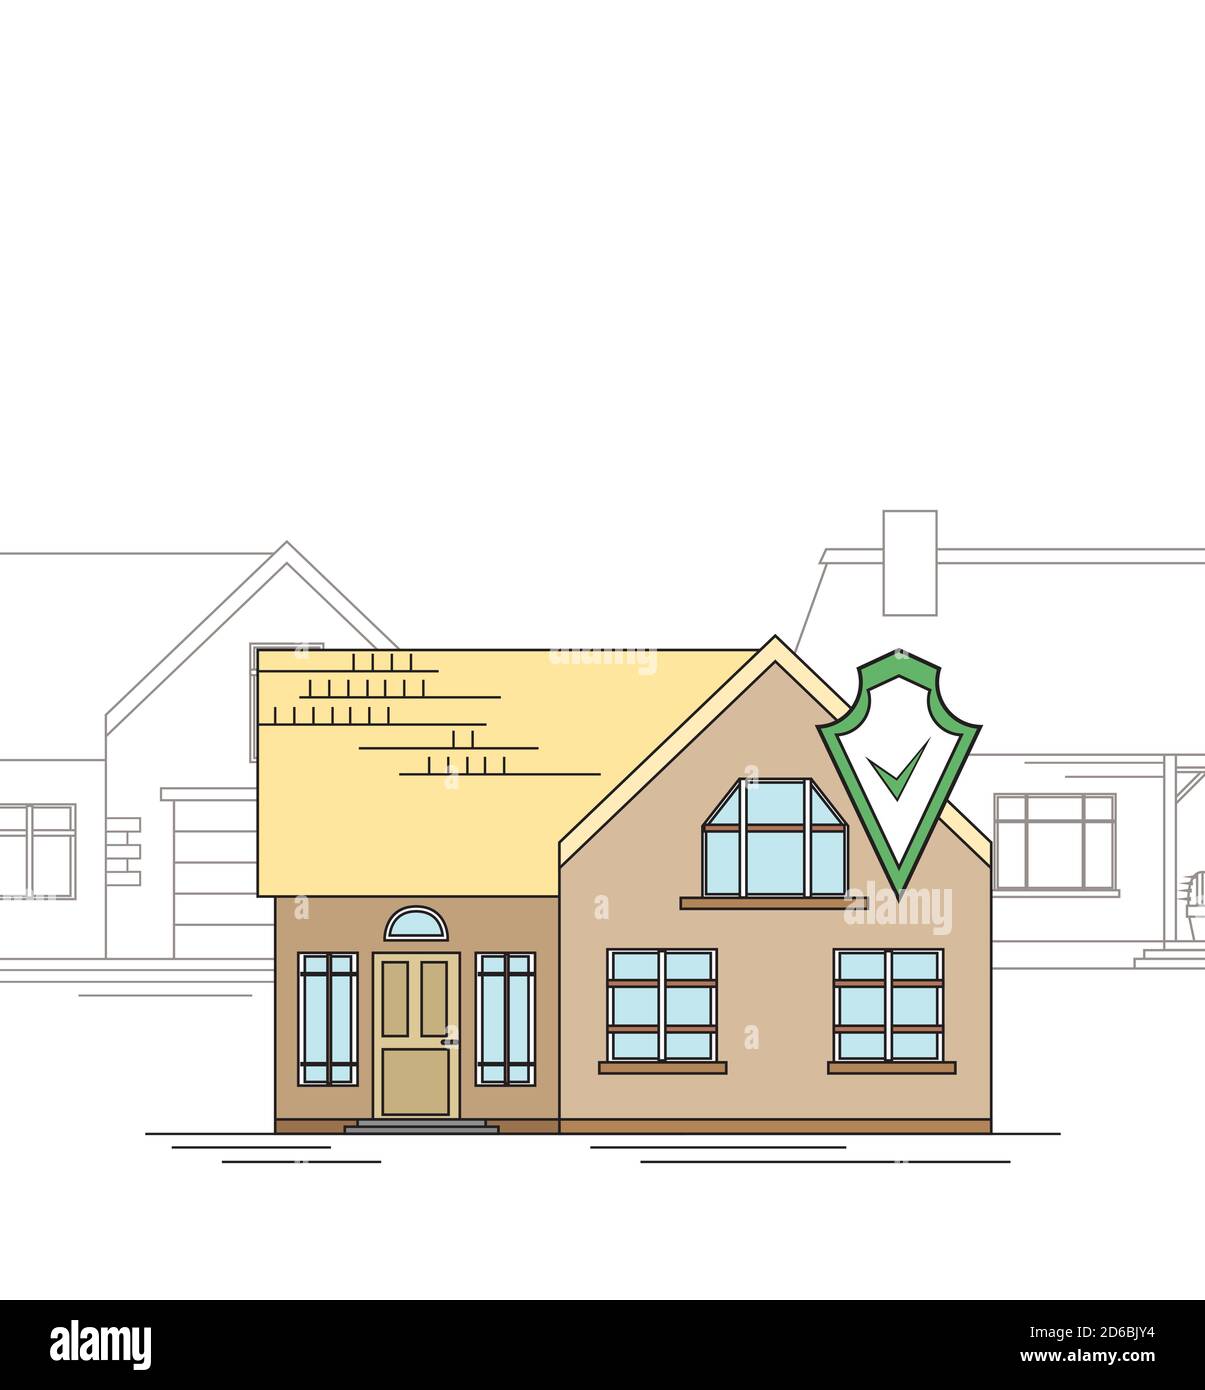 Skizze eines Landhauses mit Schutzschild. Smart Home mit Alarm auf dem Hintergrund der gewöhnlichen Häuser. Das Haus wird bewacht. Linienart f Stock Vektor